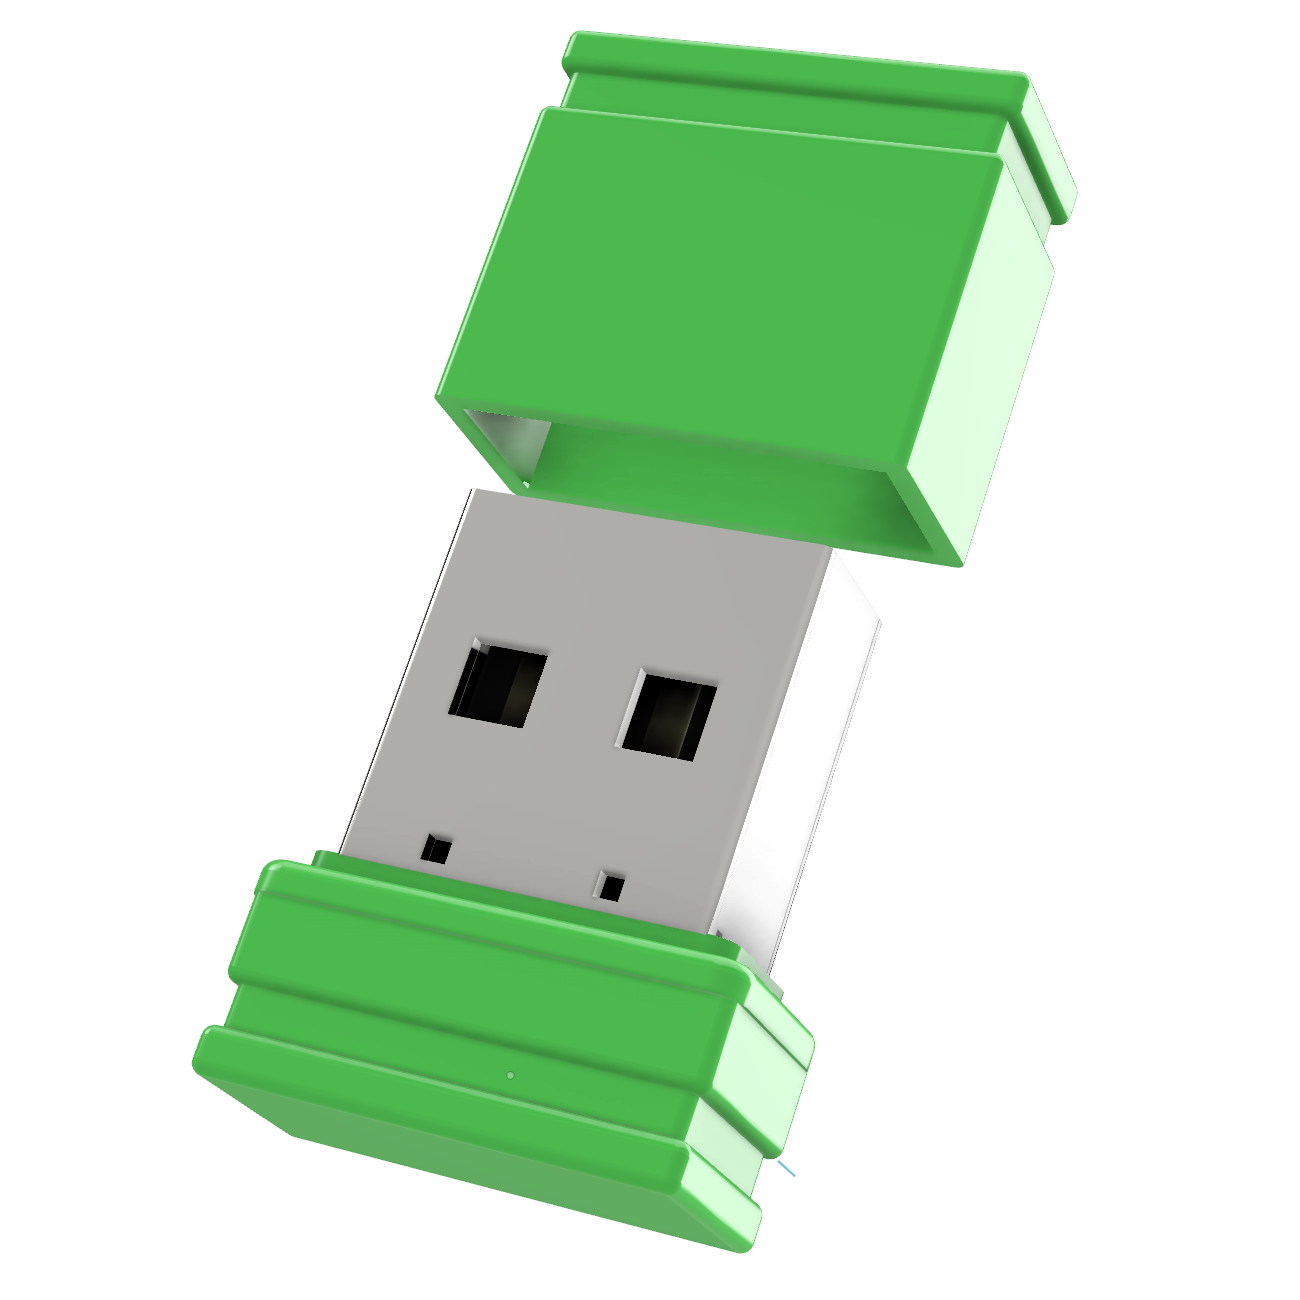 P1 USB USB-Stick GERMANY ®ULTRA 4 (Grün, GB) Mini